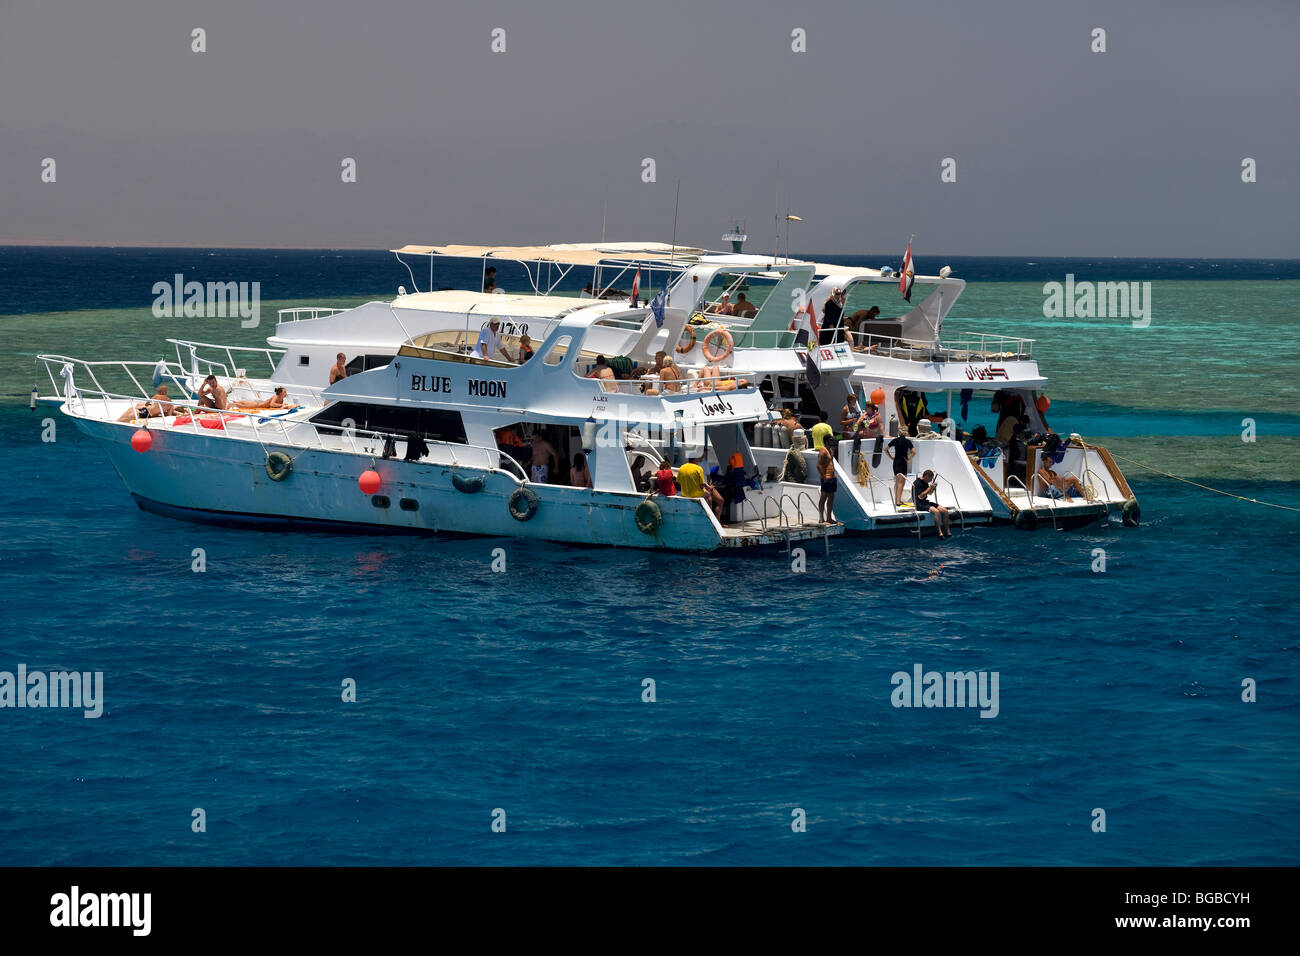 Africa, Egitto Sharm el Sheikh, sull'isola di Tiran, barca, costa, colori, Coral reef, snorkeling, acqua, persone, diving, ragazzi Foto Stock